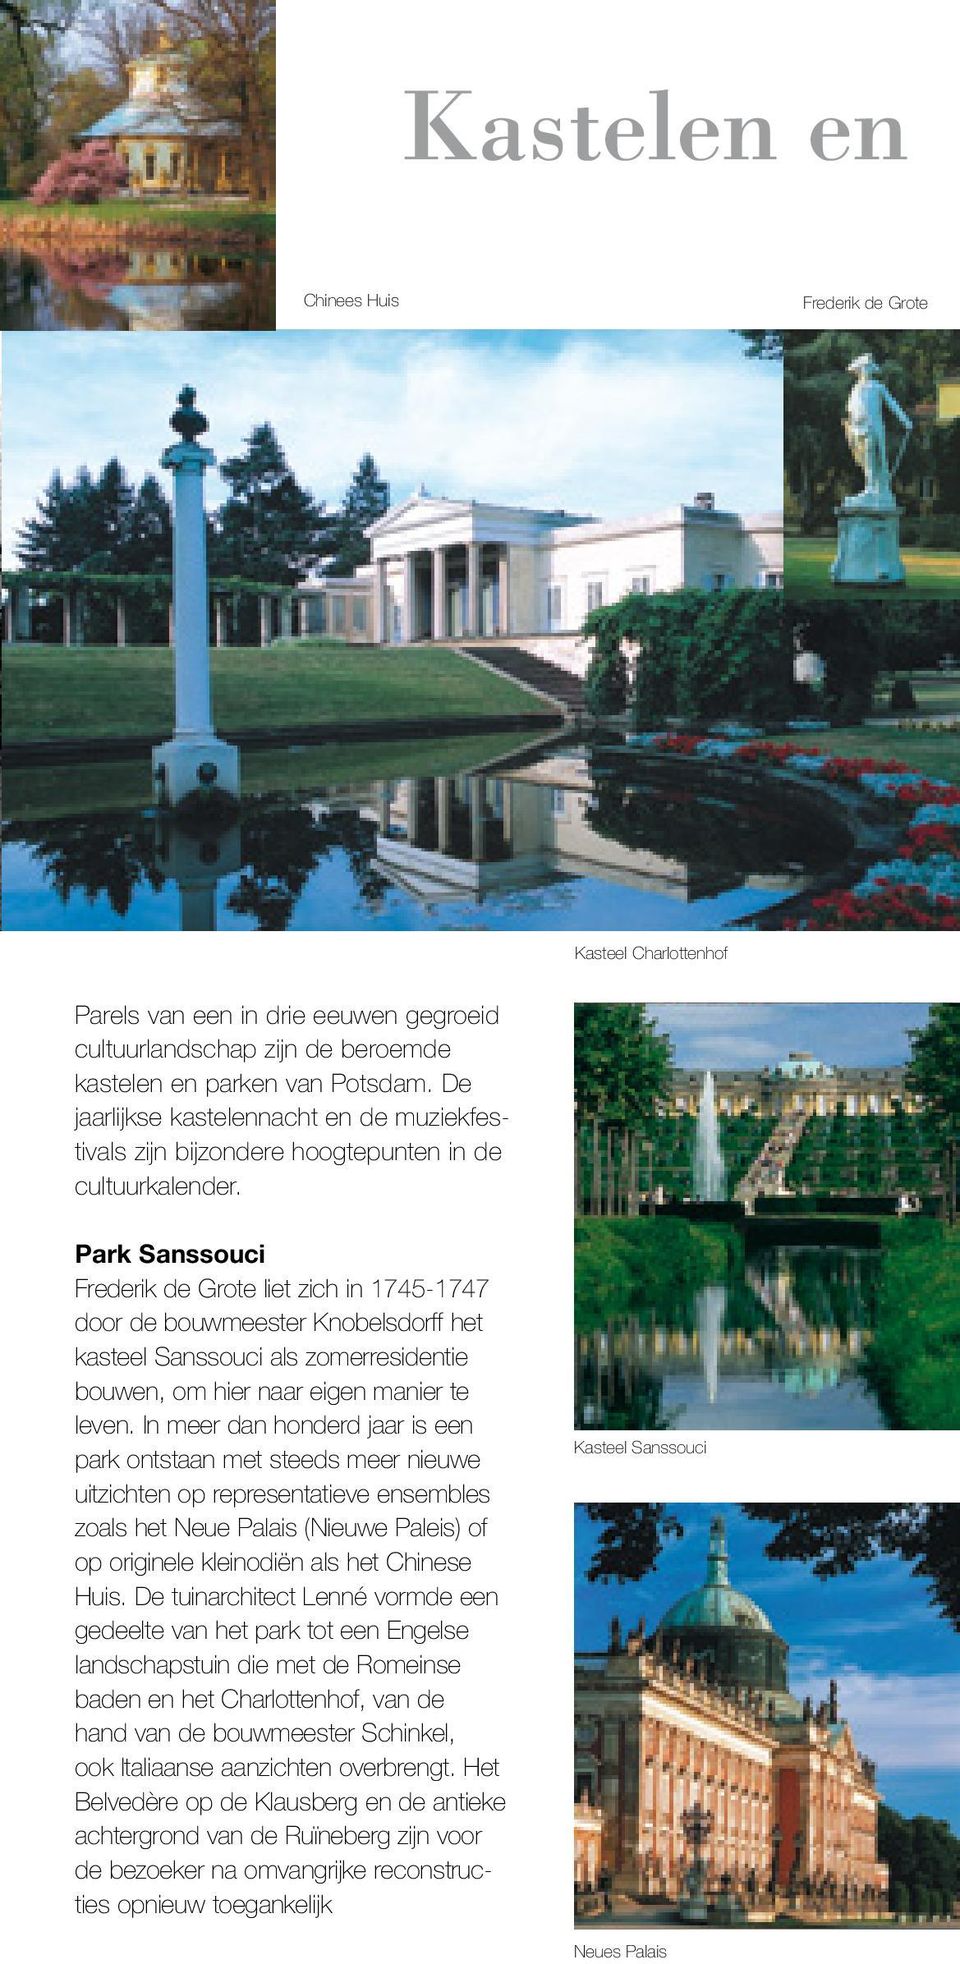 Park Sanssouci Frederik de Grote liet zich in 1745-1747 door de bouwmeester Knobelsdorff het kasteel Sanssouci als zomerresidentie bouwen, om hier naar eigen manier te leven.